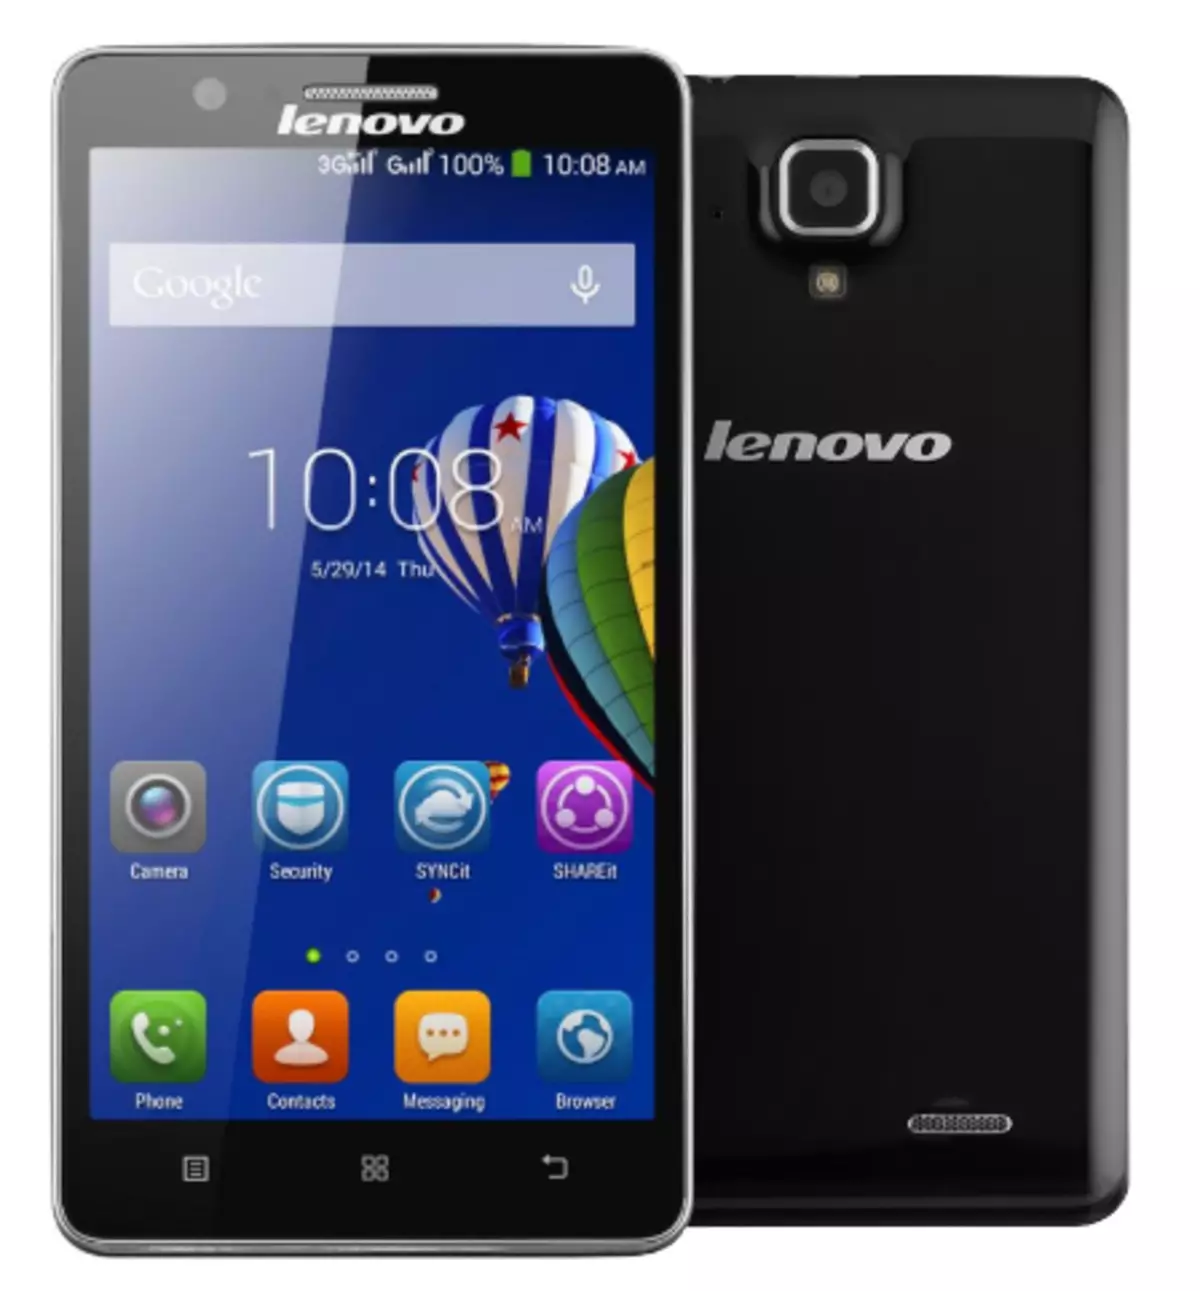 Lenovo A536 Firmware Via SP Flash Tool